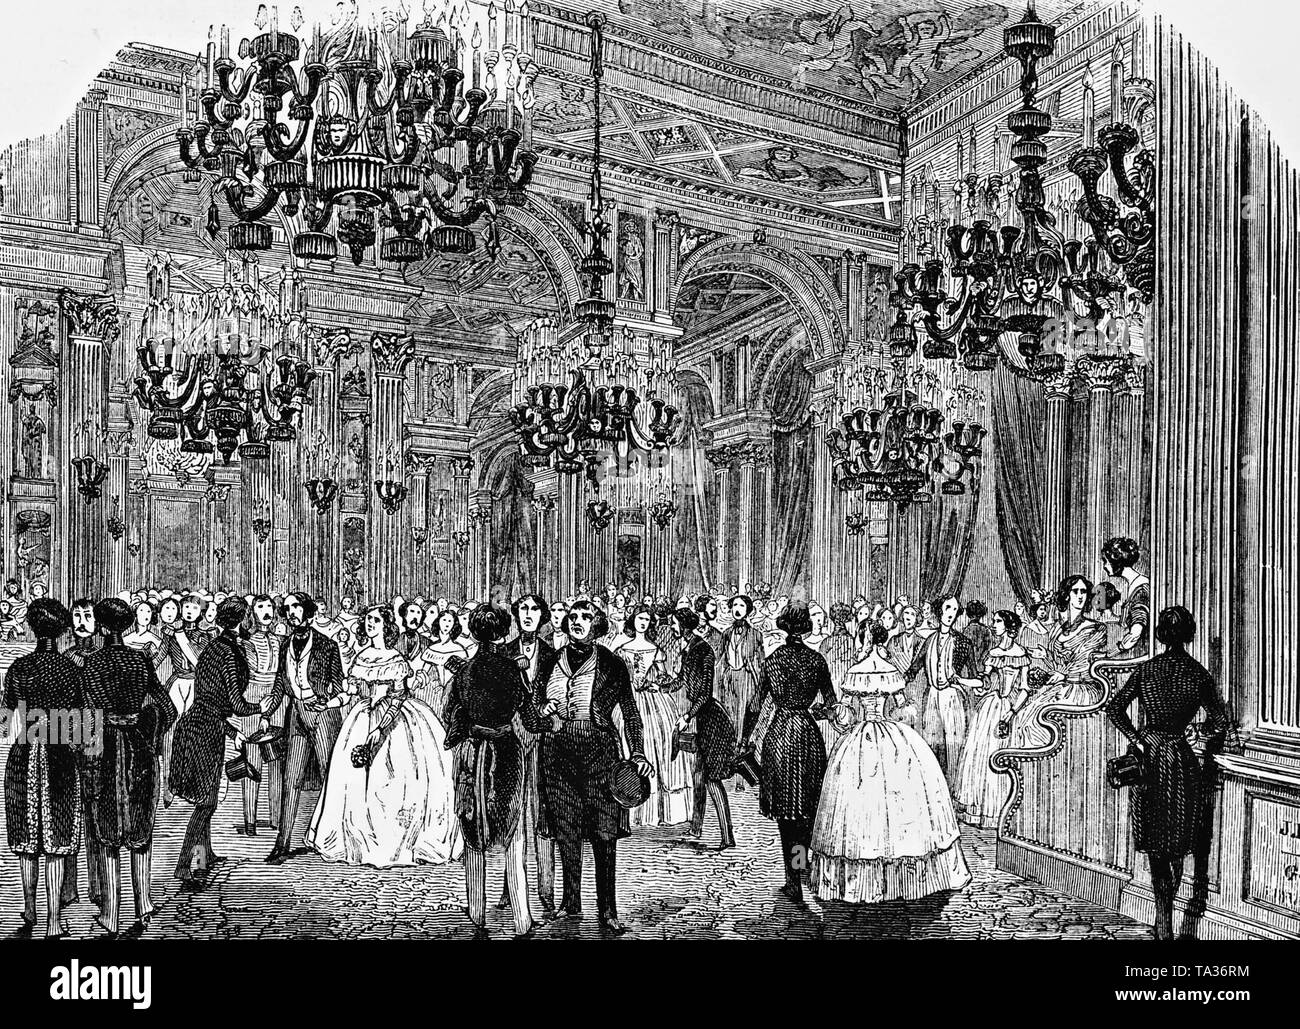 Au cours d'un bal dans la salle de bal d'une maison de ville de Paris. Gravure de 1844. Banque D'Images